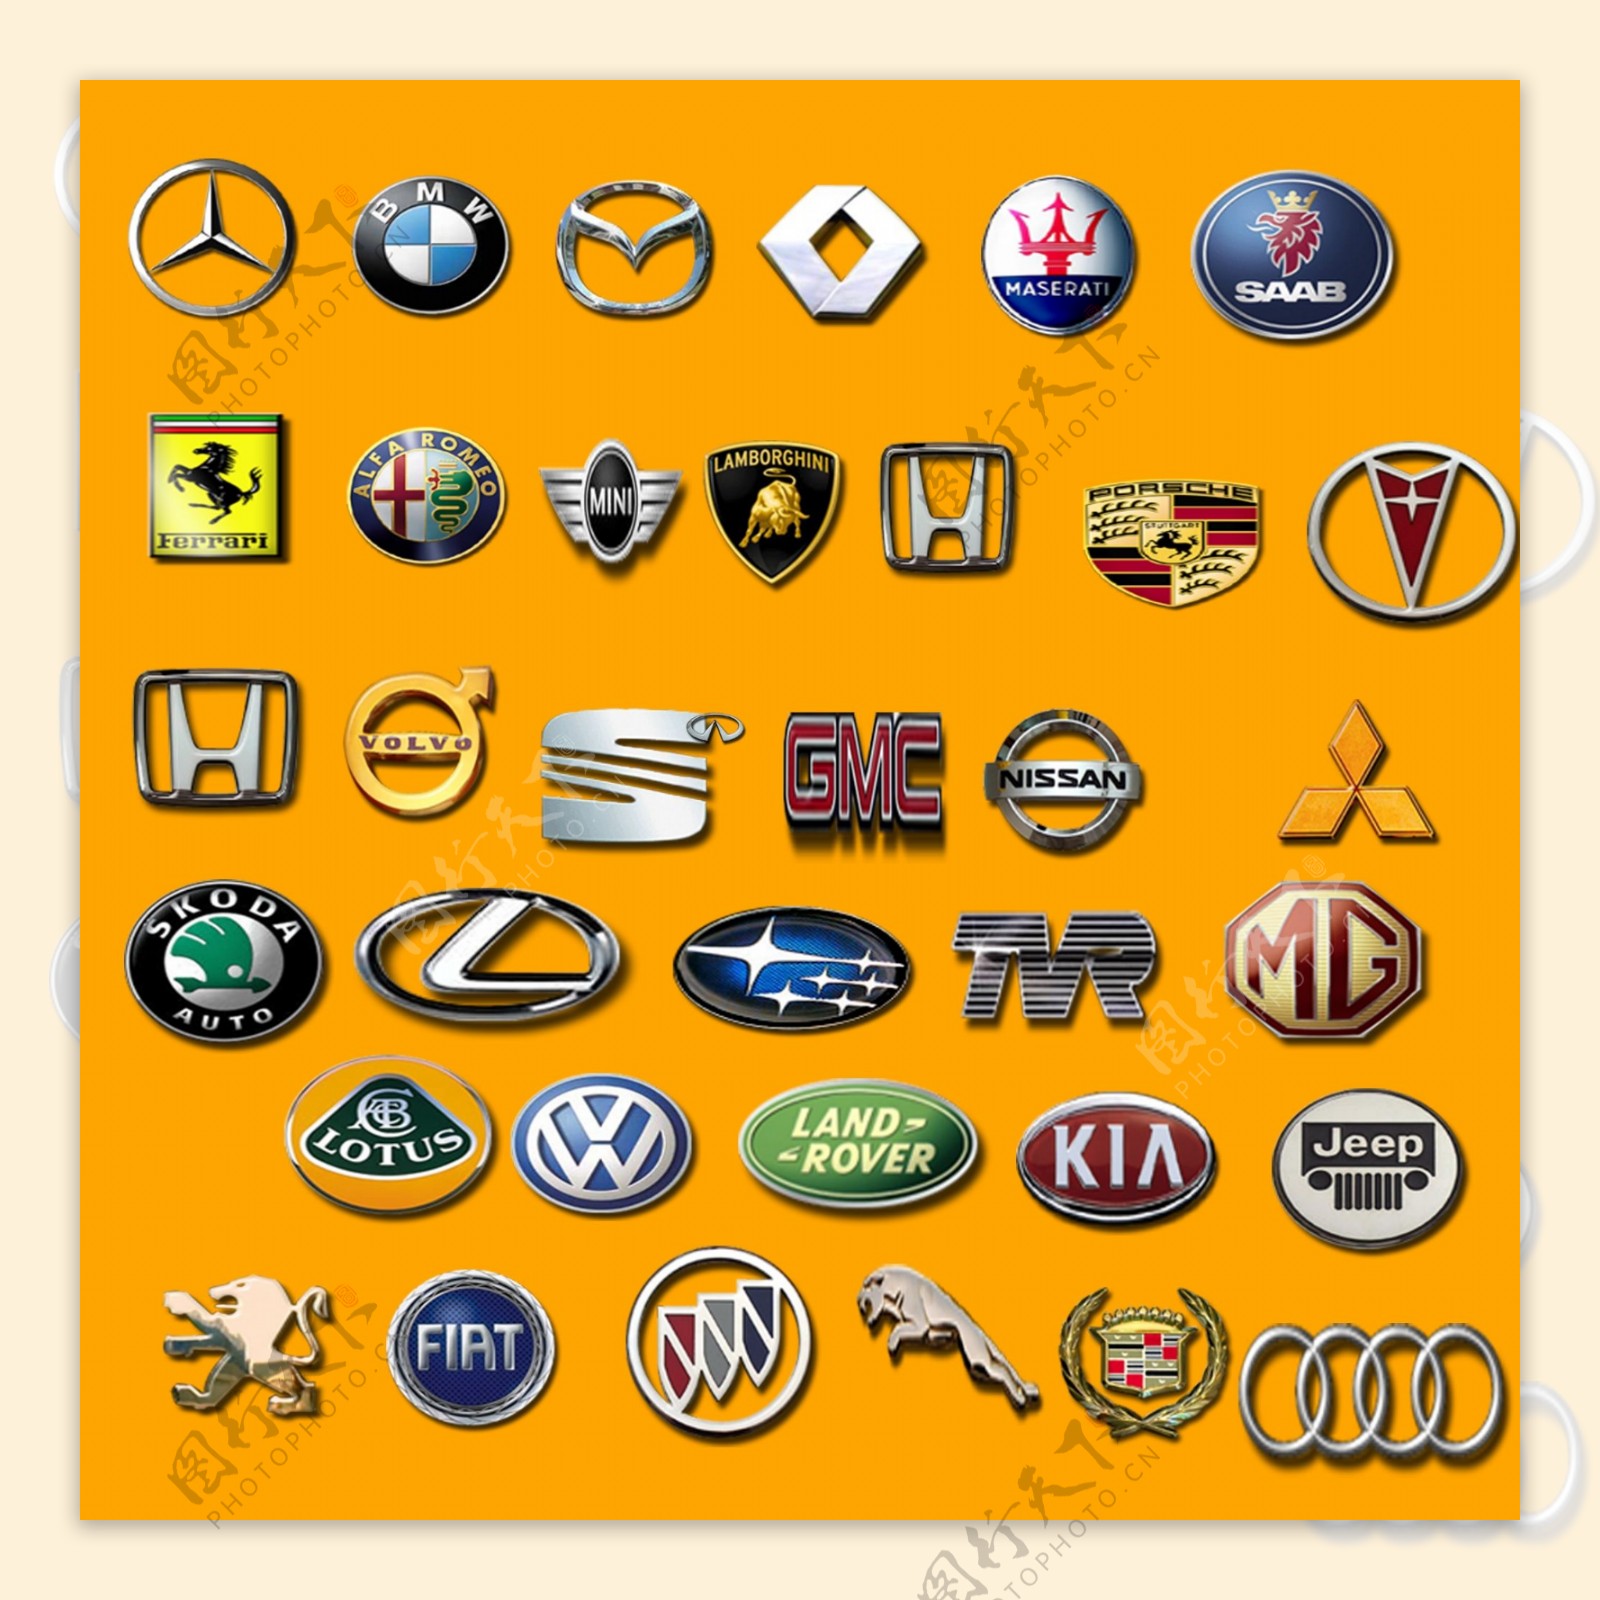 世界名牌汽车标志都是什么样的-世界上最著名的十大汽车品牌是什么?